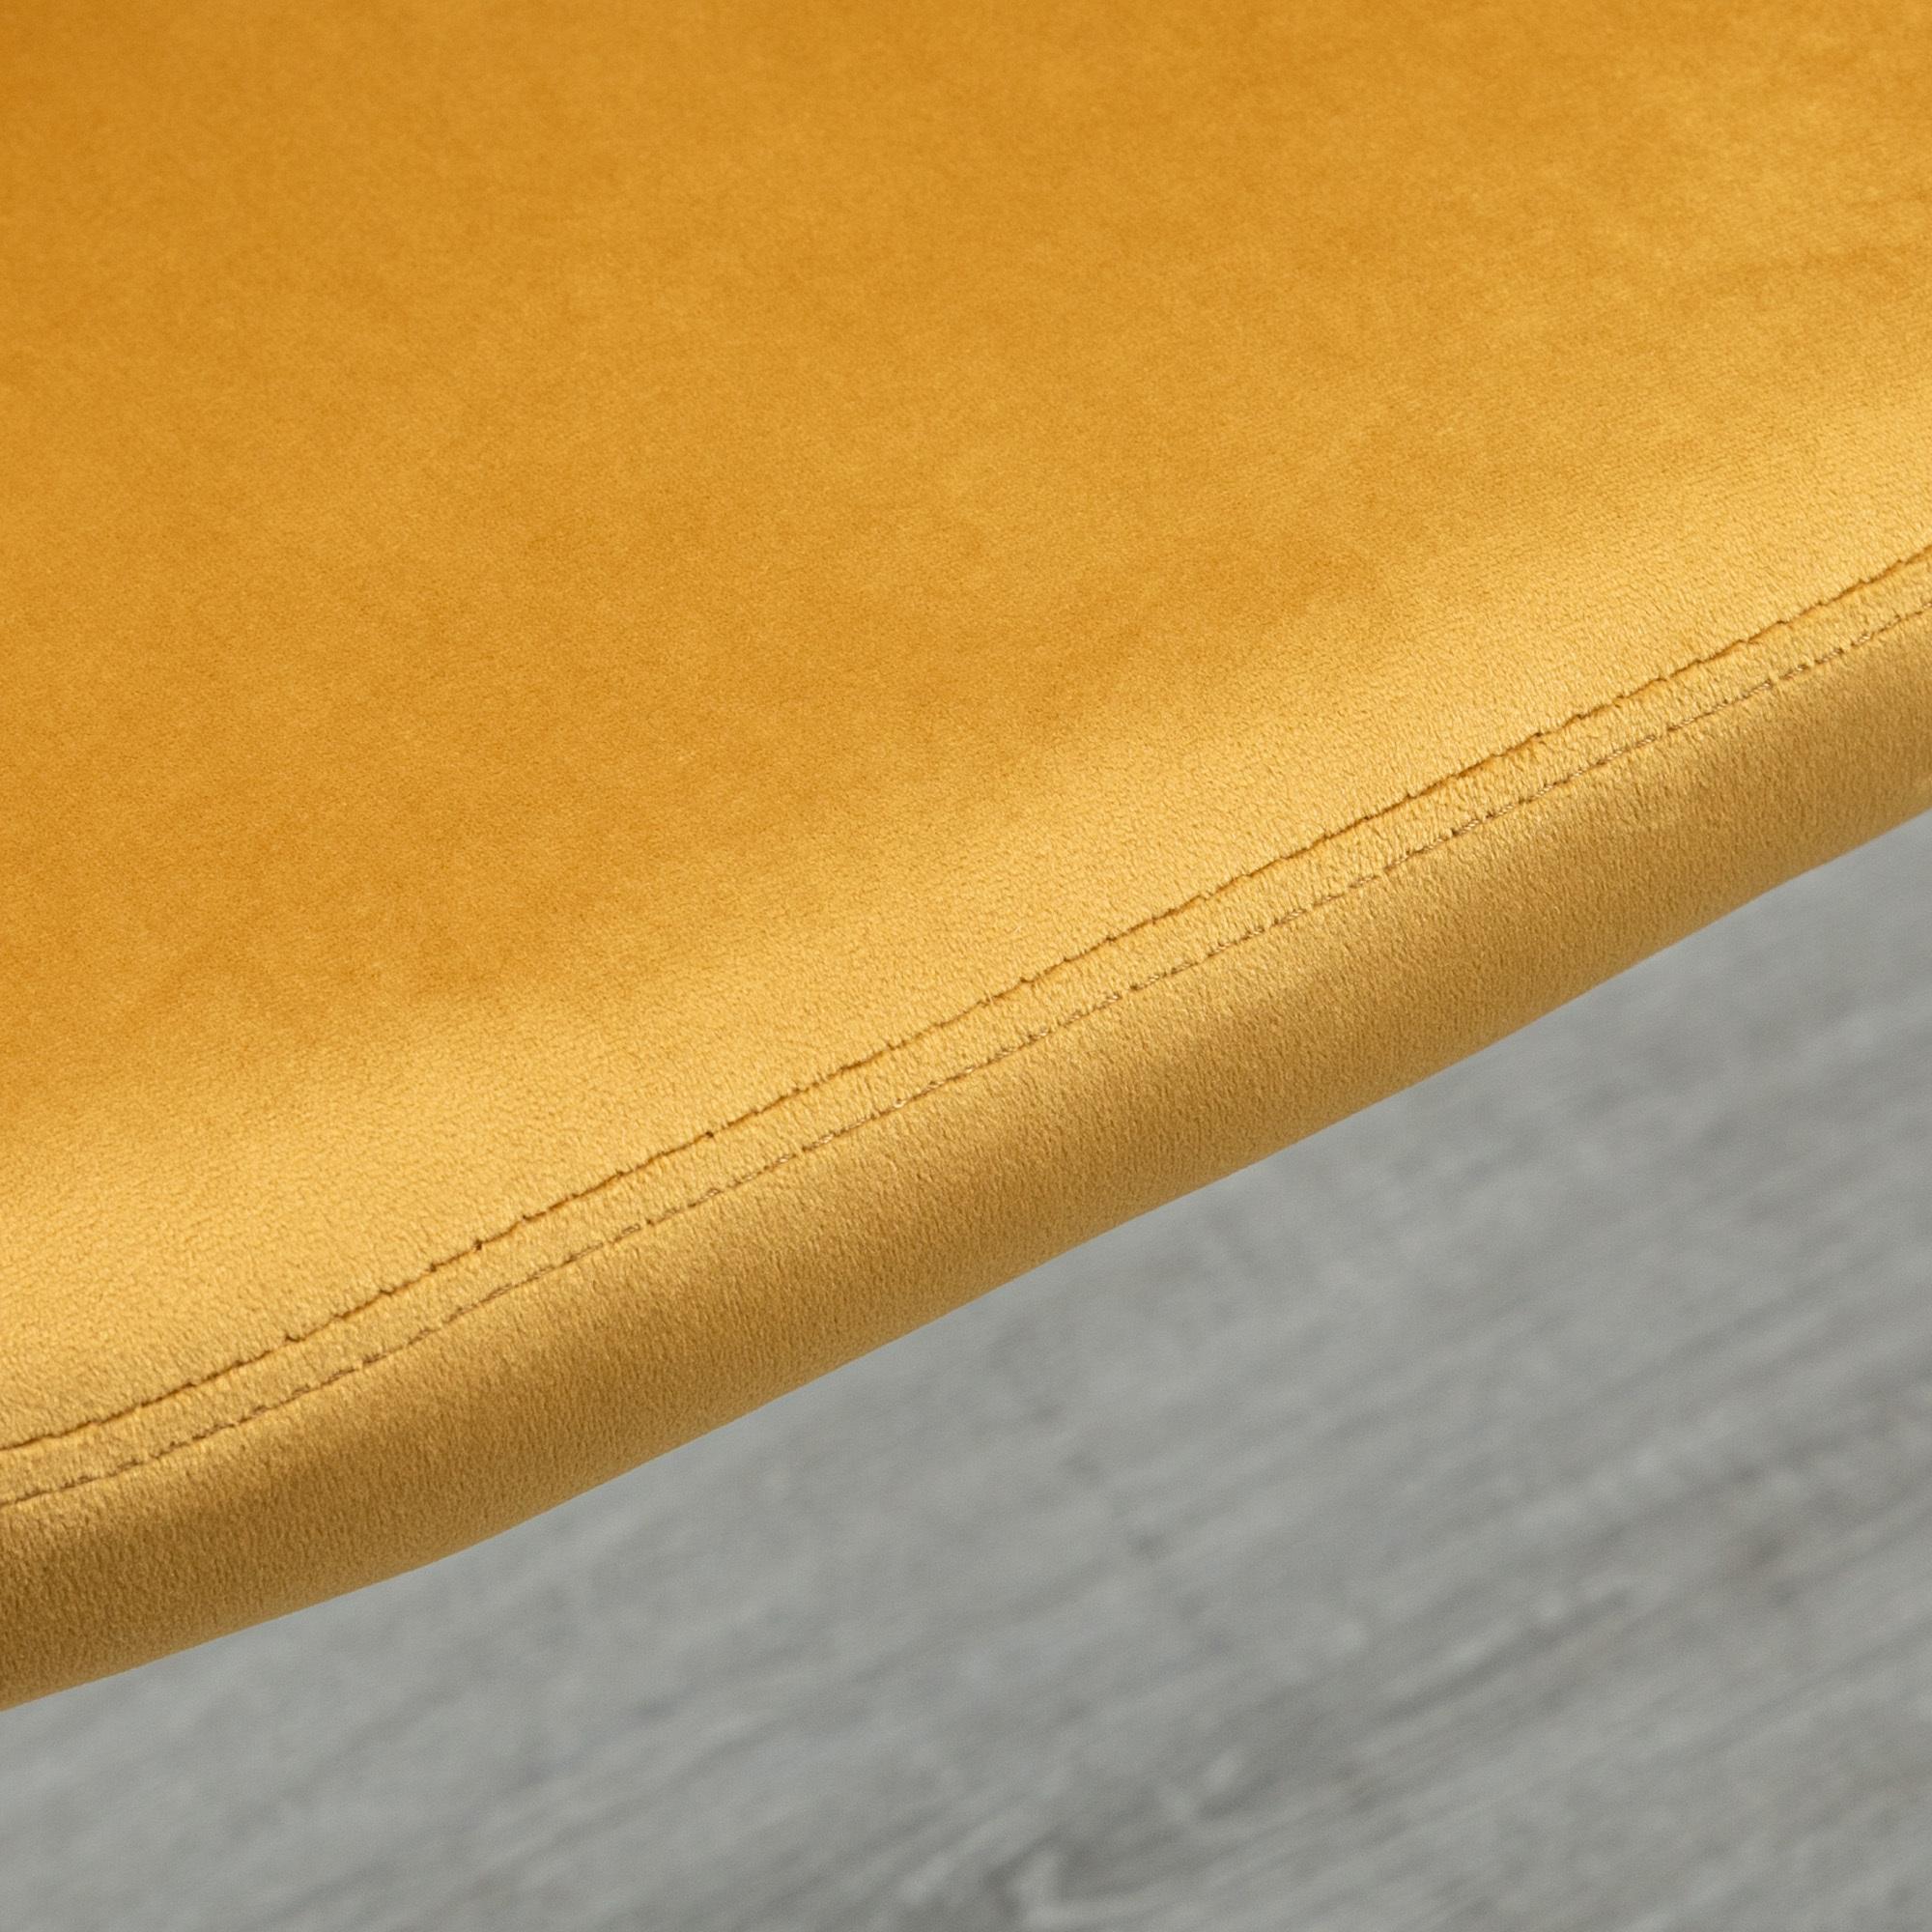 Chaises de visiteur design scandinave - lot de 4 chaises - velours gris bleu canard moutarde